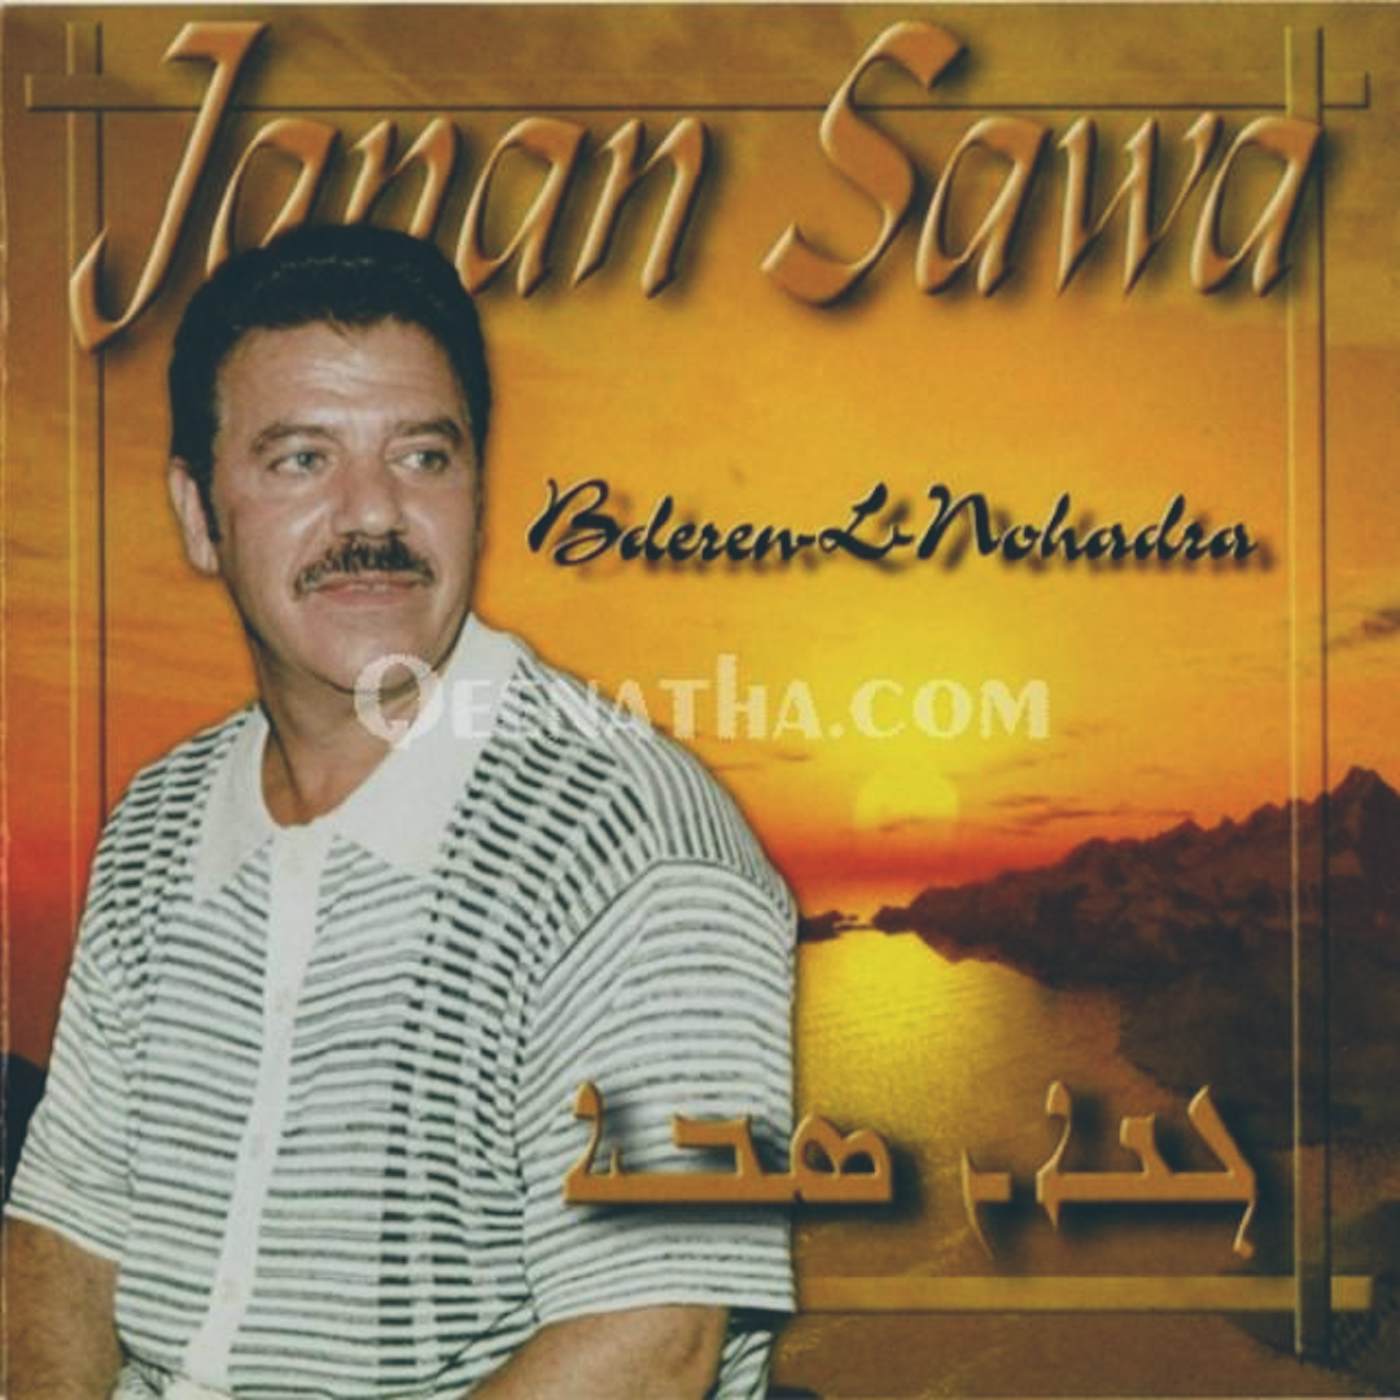 Janan Sawa Store: Official Merch & Vinyl